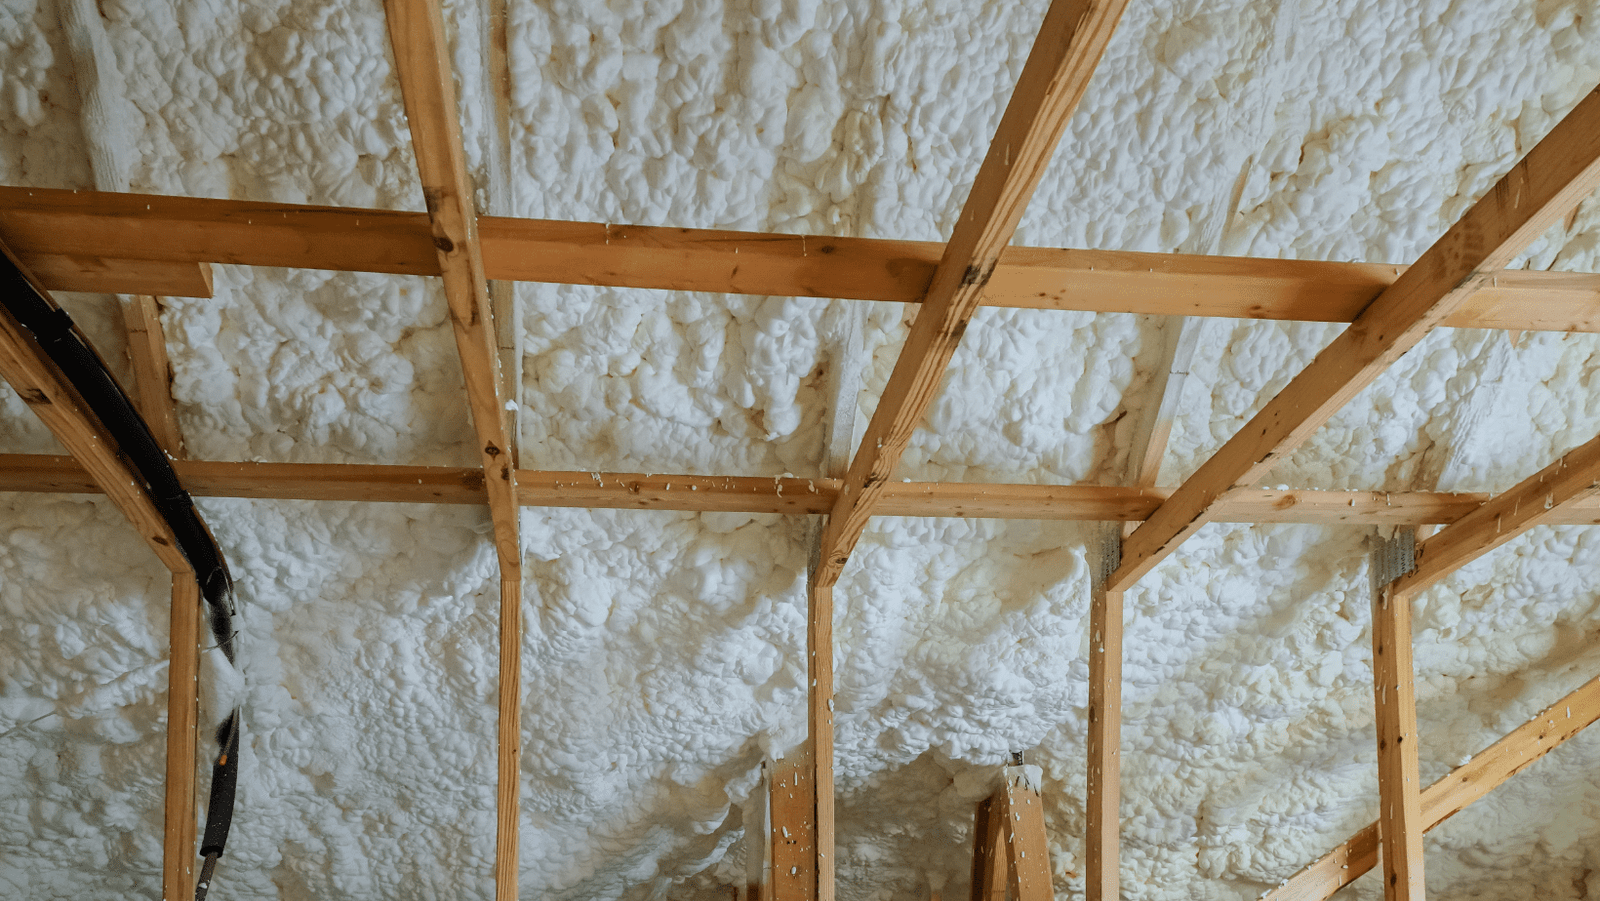 spray foam insulation contractor in brainerd